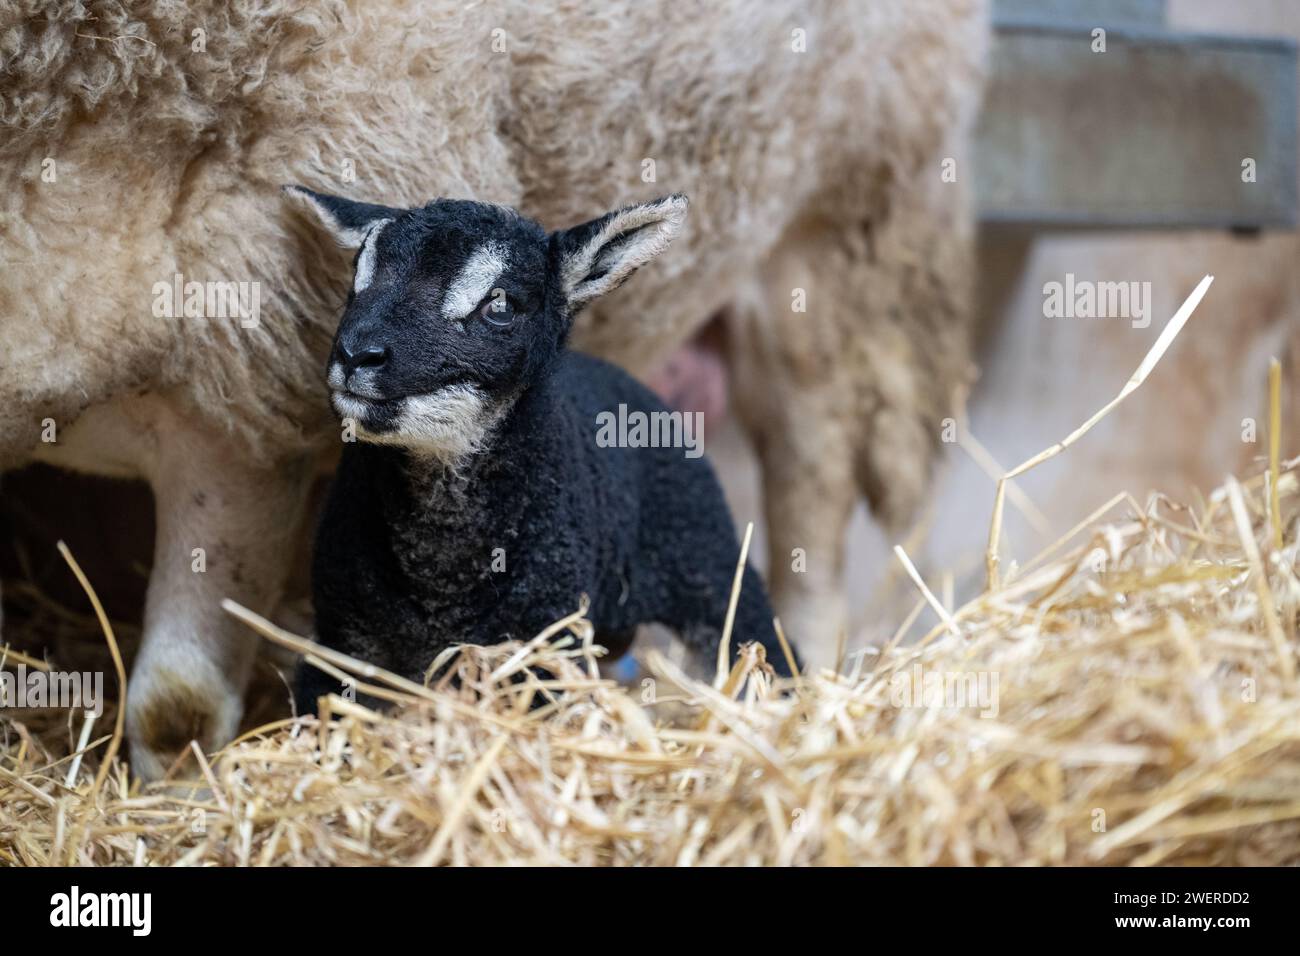 Pecora incrociata con un pedigree Badger ha affrontato Texel a piedi a seguito di un programma di allevamento di trapianti di embrioni. Cumbria, Regno Unito. Foto Stock